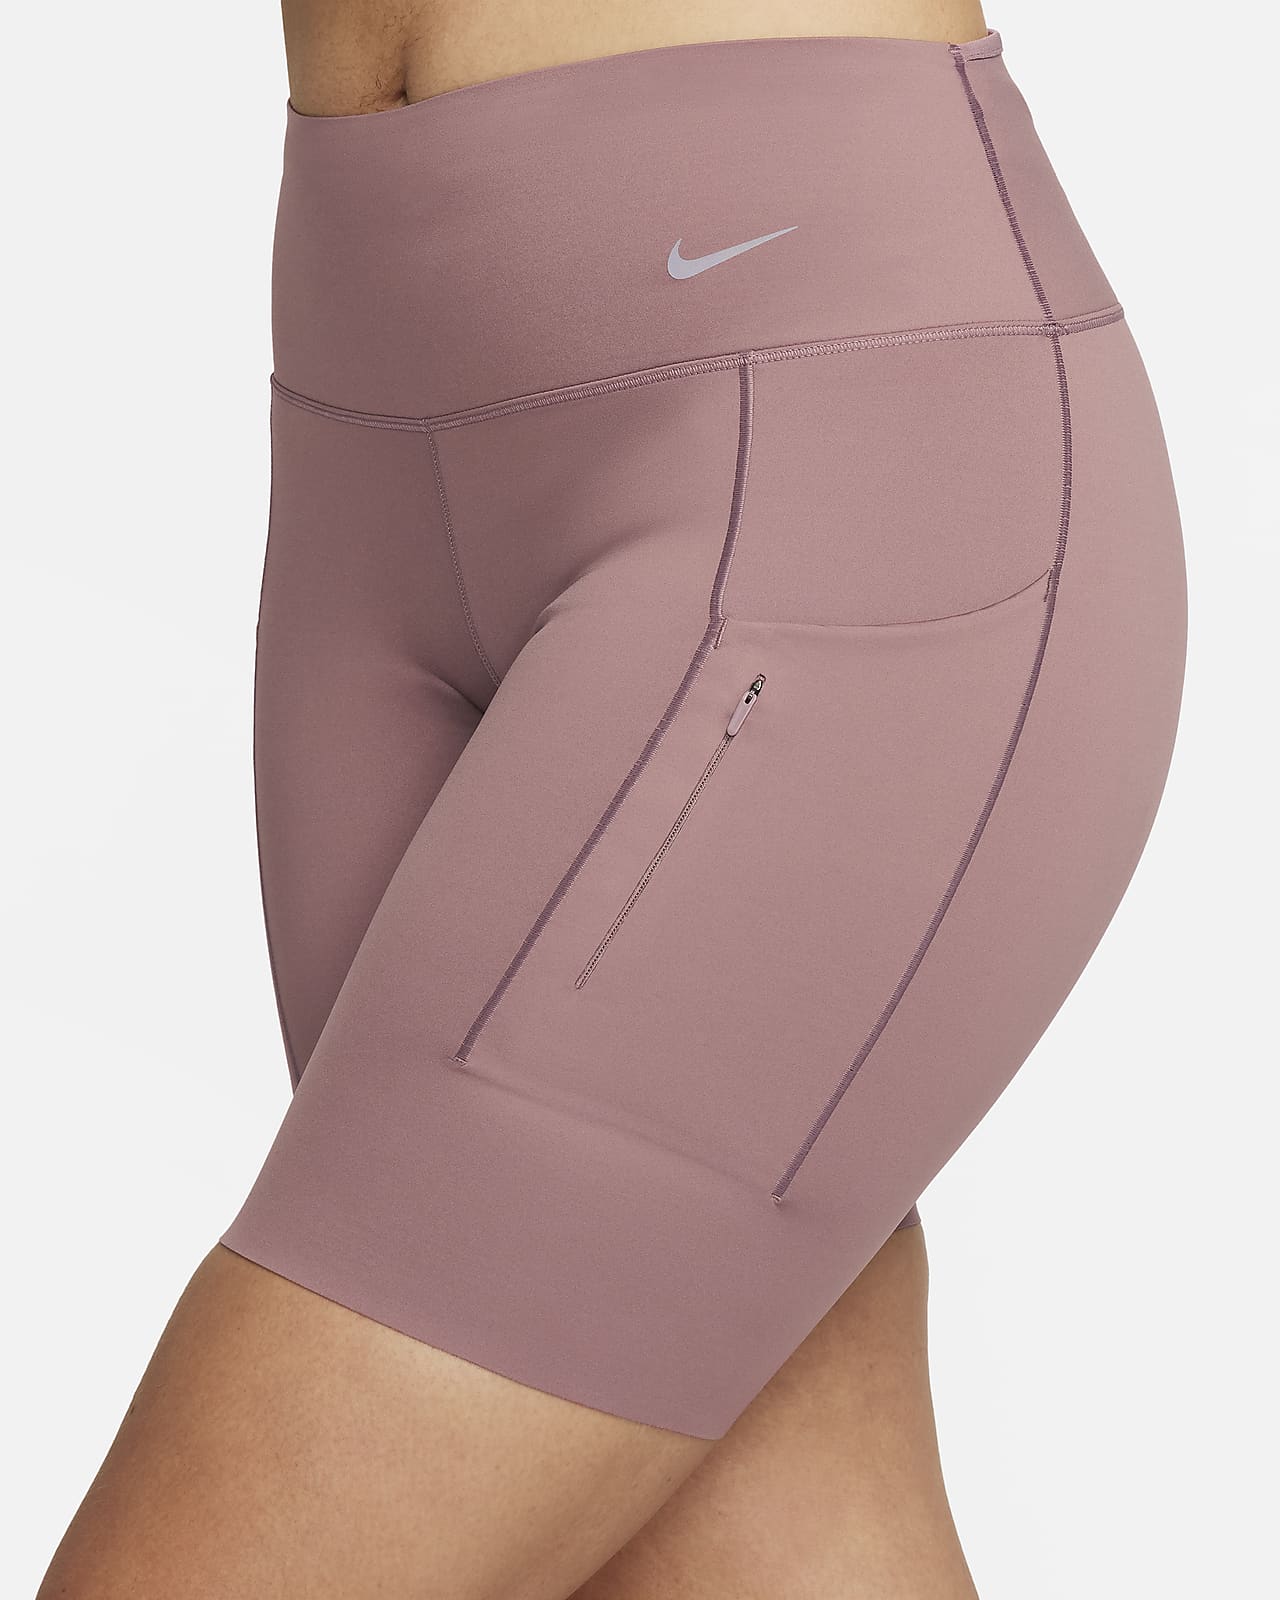 Nike Go Women's Firm-Support Mid-Rise Full-Length Leggings Pockets Size S,  M, L